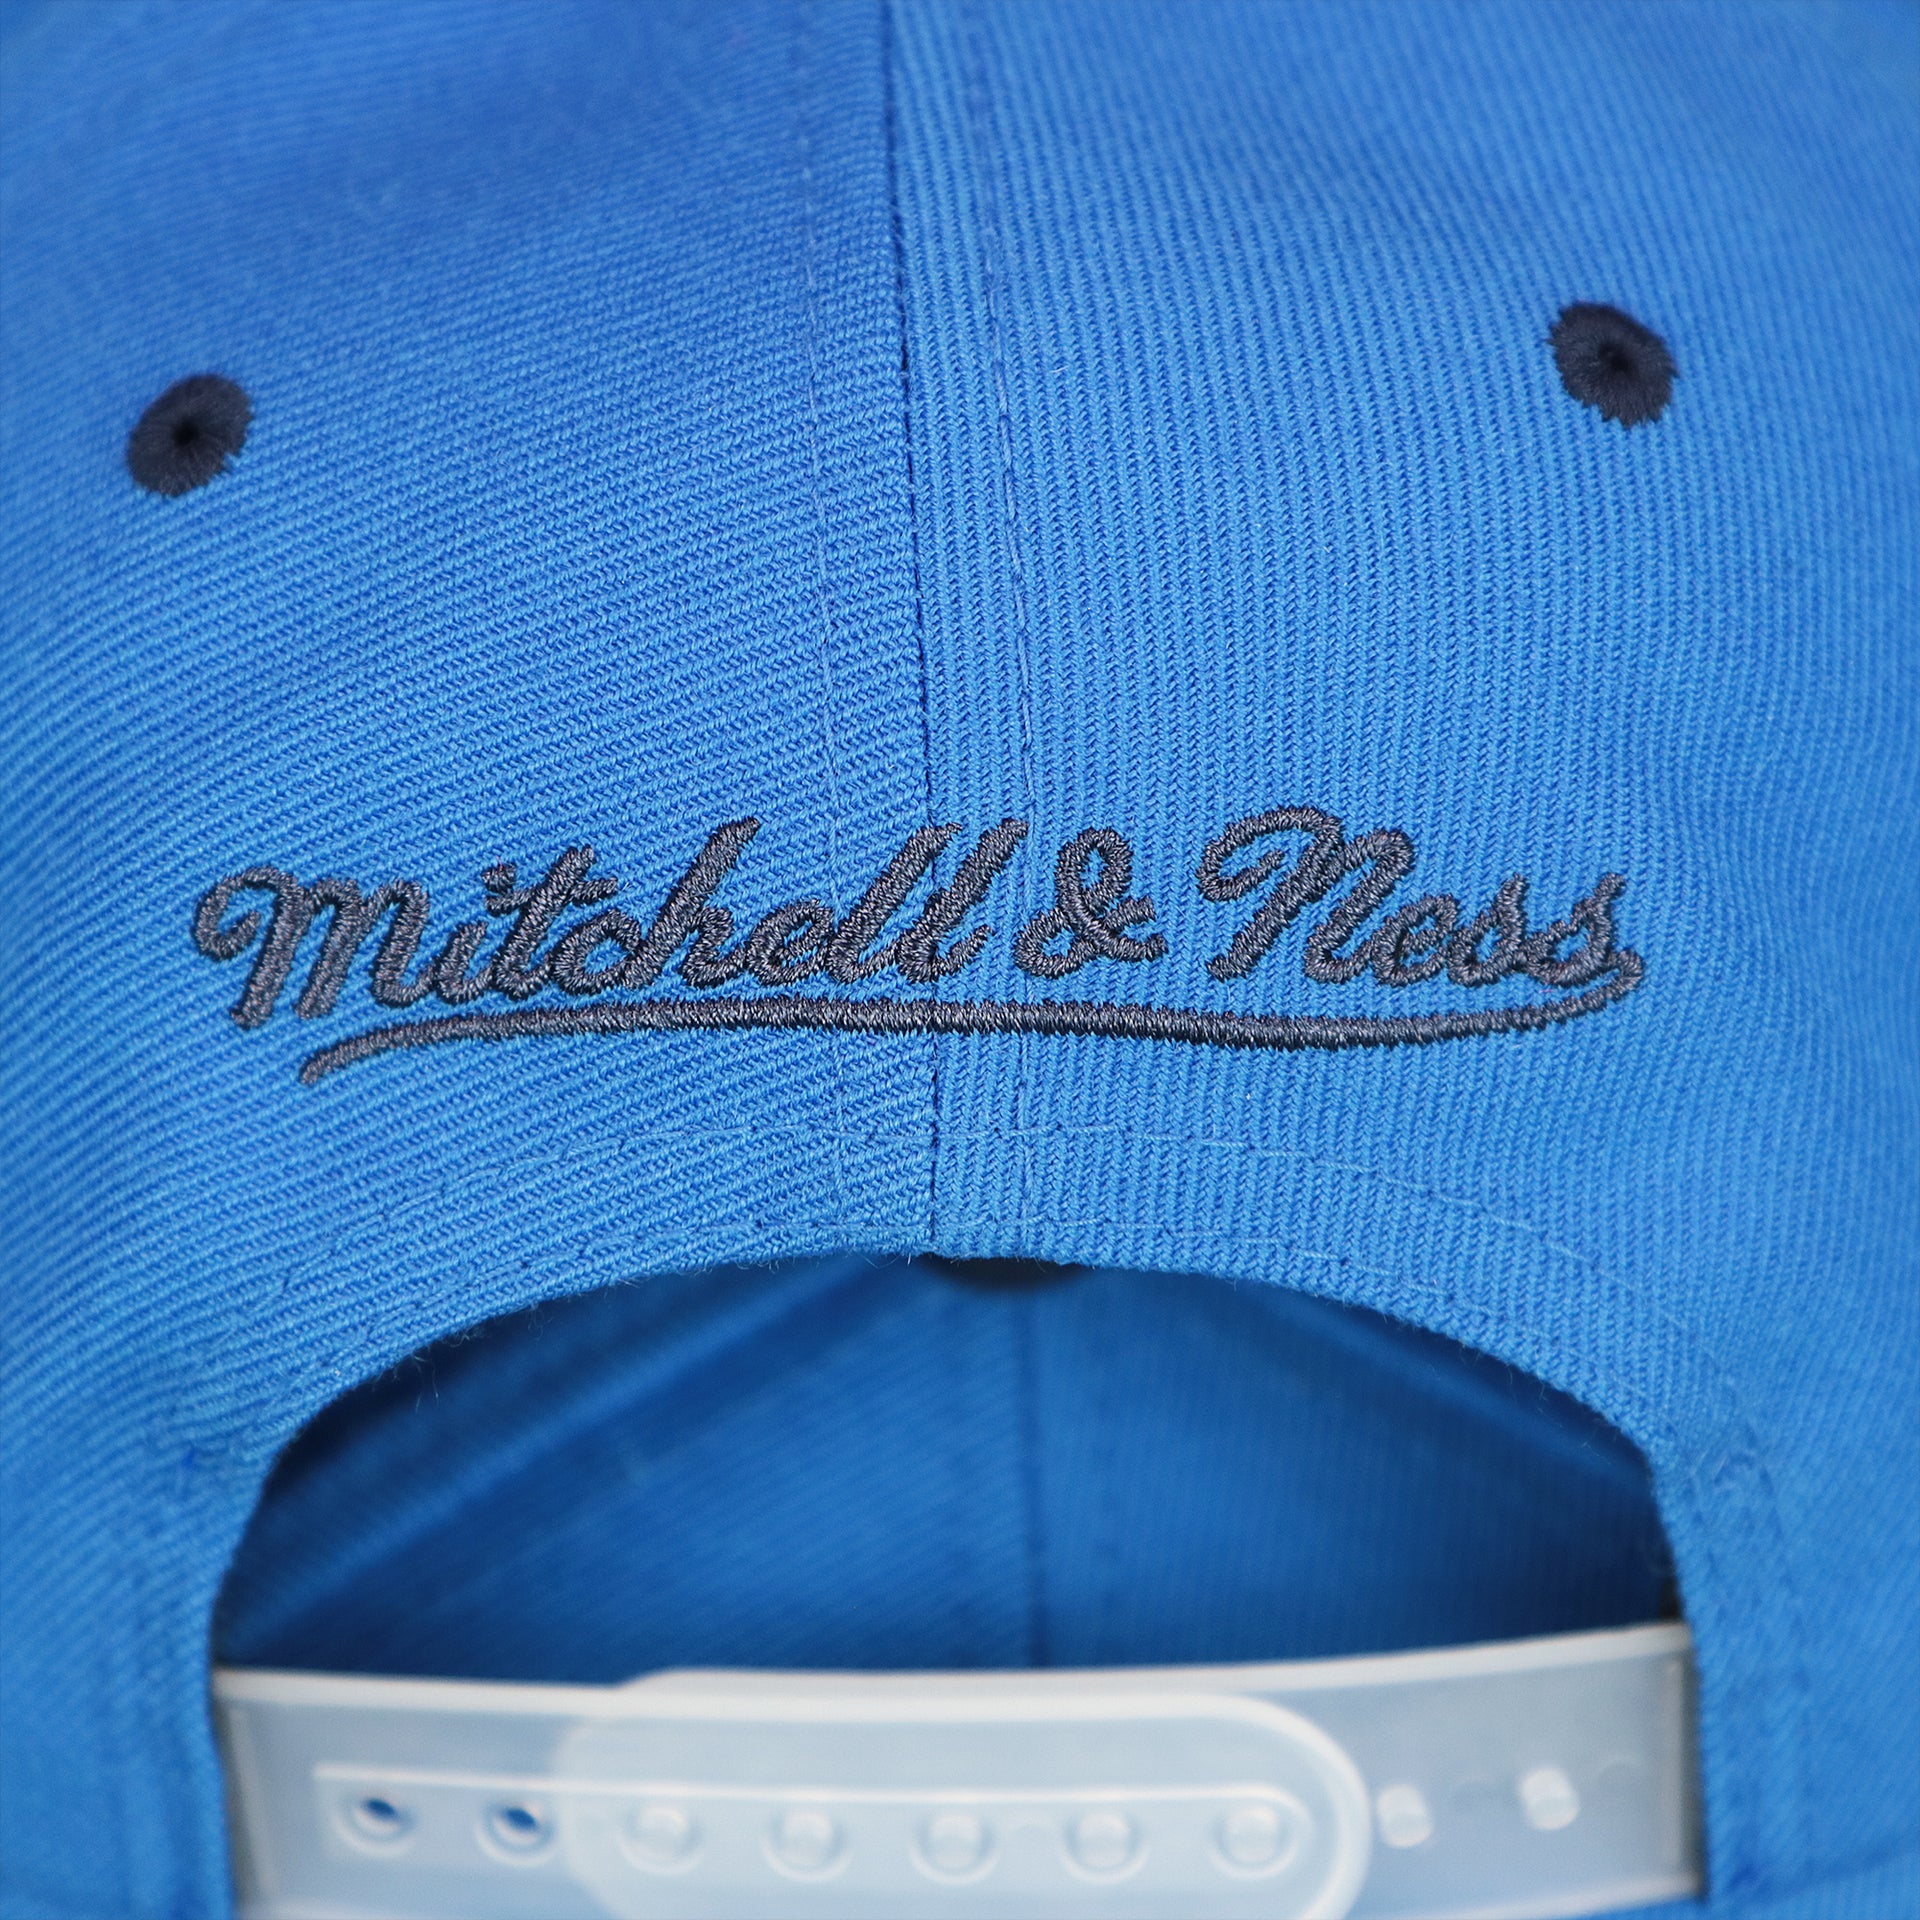 The Mitchell And Ness Wordmark on the Thunder Snapback Hat | Oklahoma City Thunder Reflective 2-Tone Snap Cap